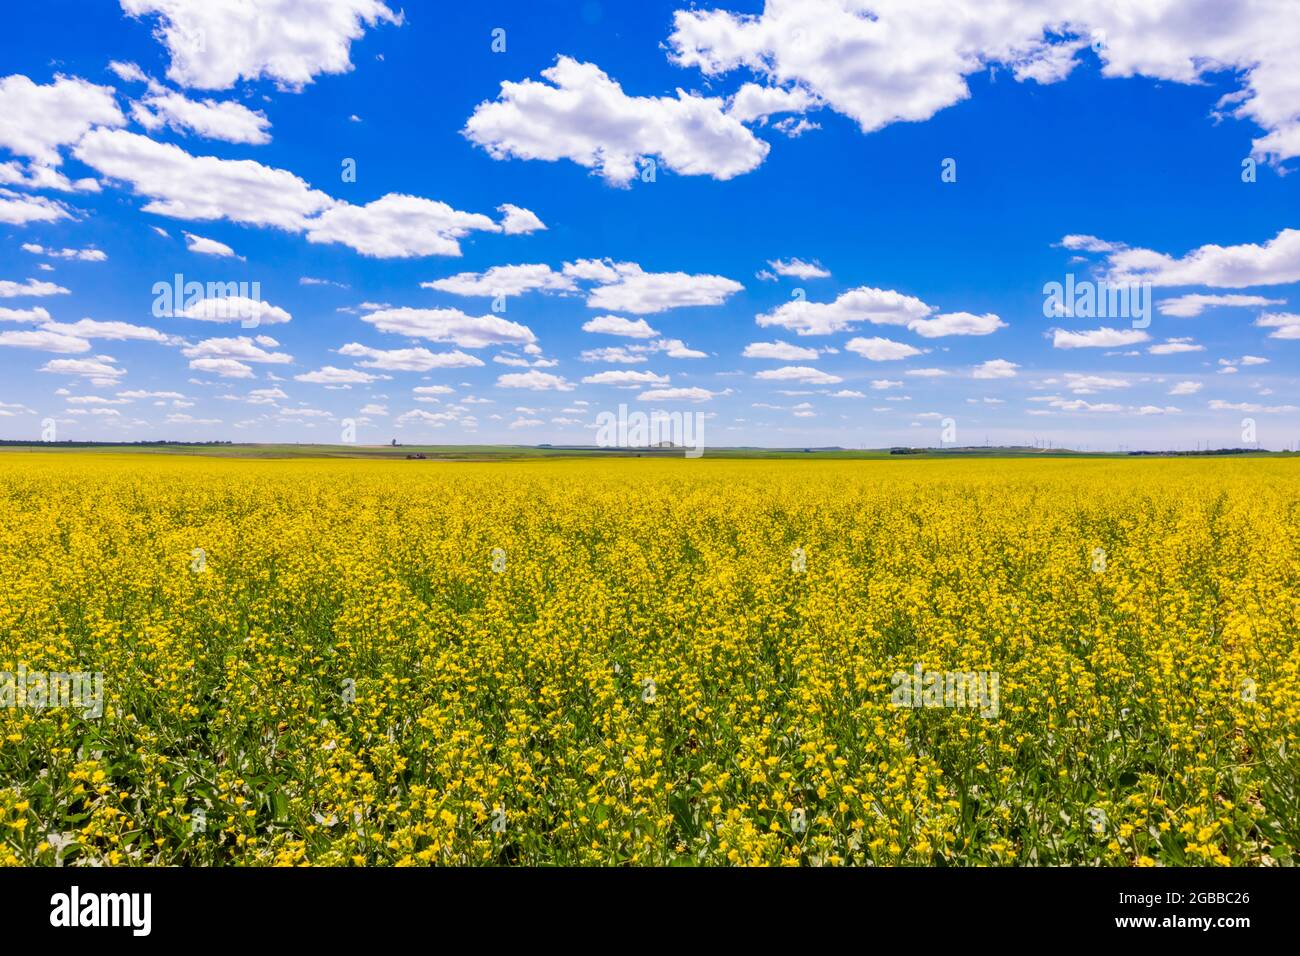 Champ de fleurs jaunes sous un ciel bleu et des nuages moelleux, Dakota du Nord, États-Unis d'Amérique, Amérique du Nord Banque D'Images